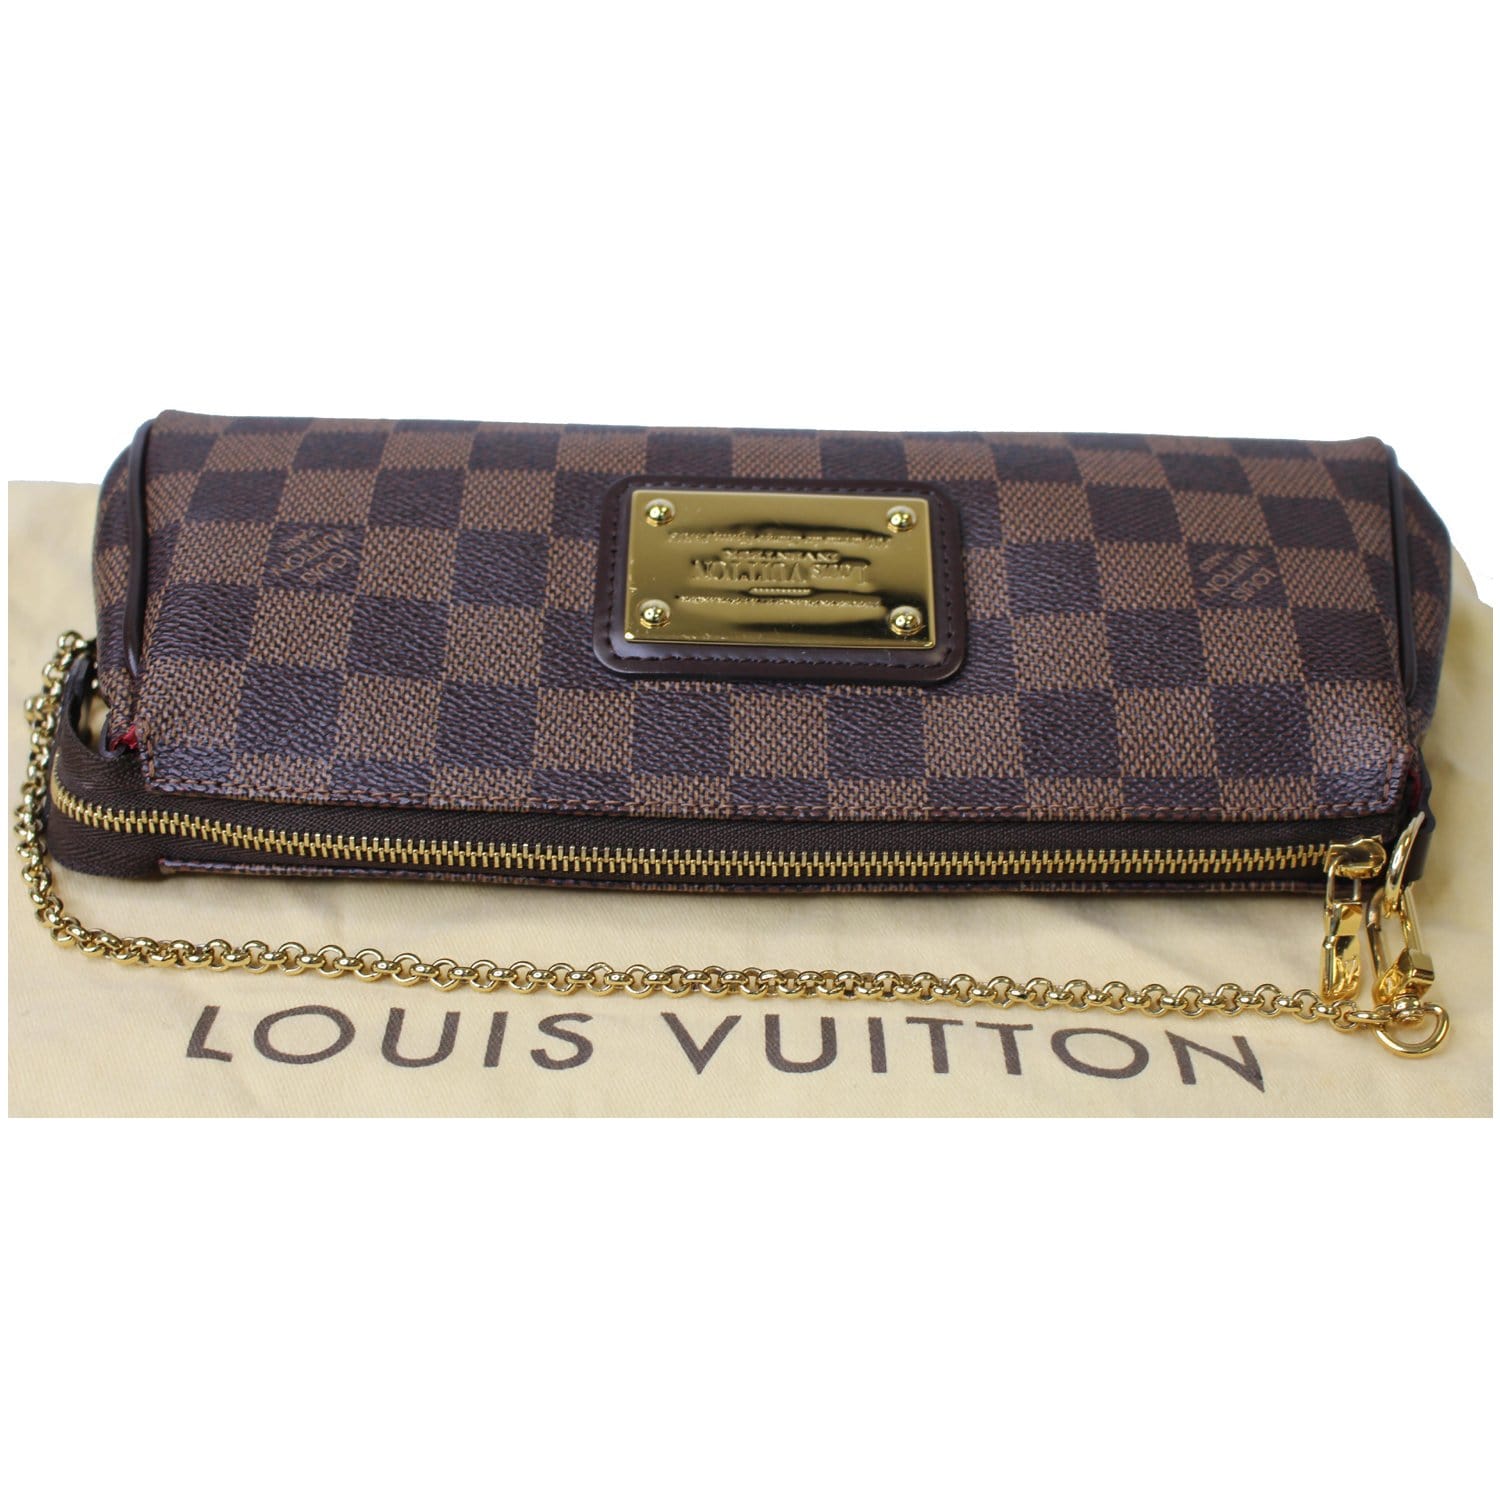 Louis Vuitton Pochette Ascot Damier - ShopStyle Clutches